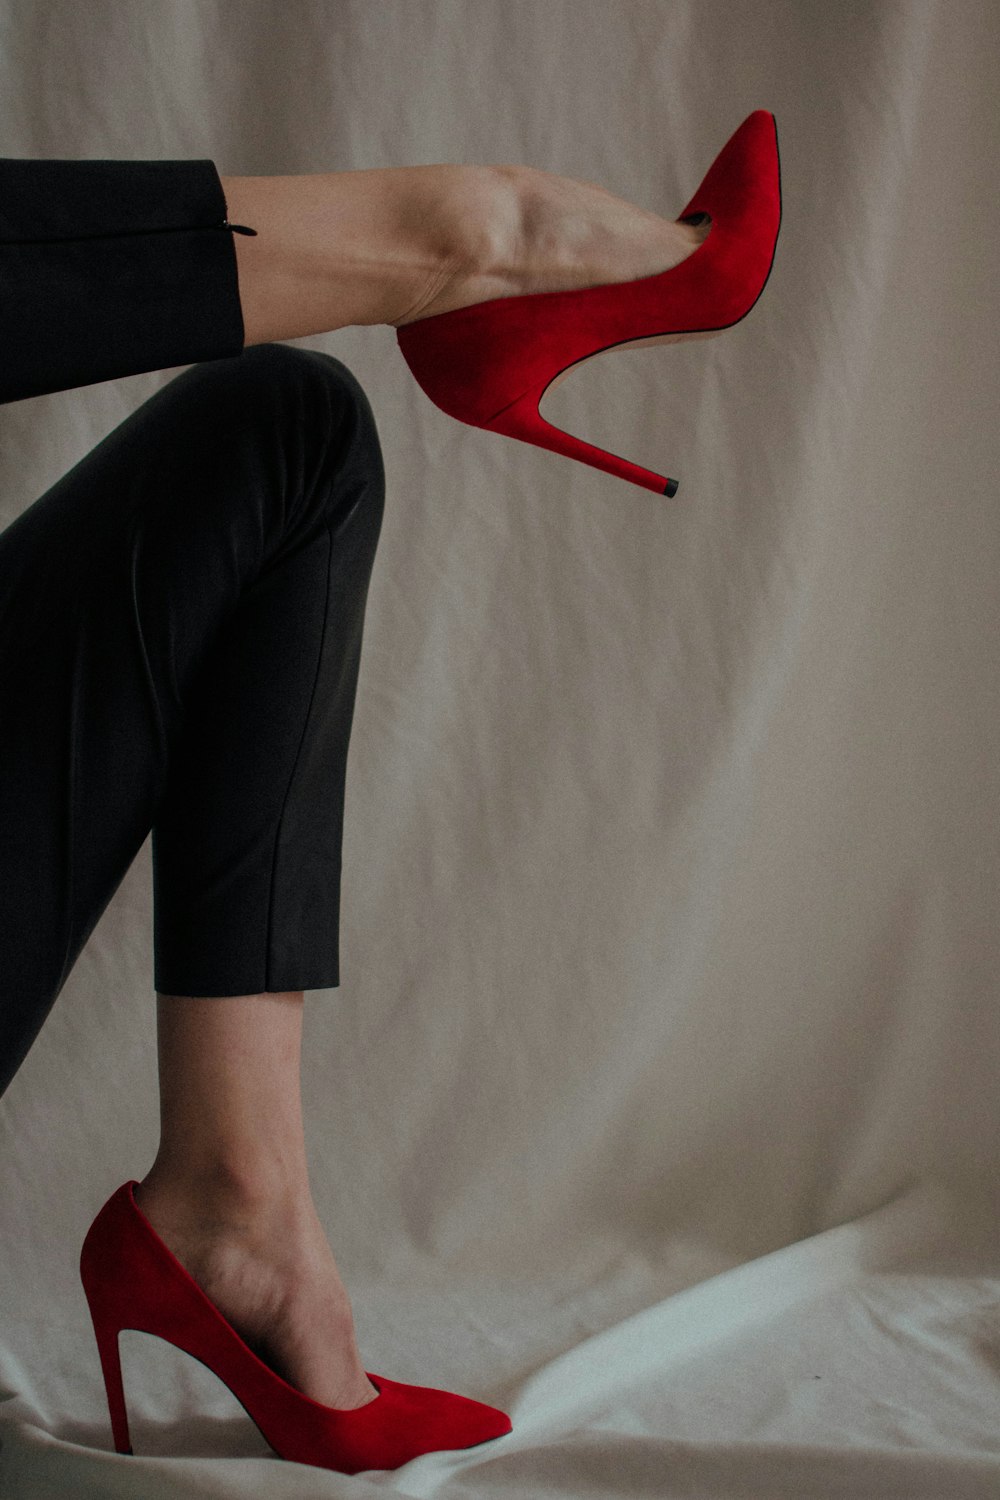 Persona con pantalones negros y zapatos rojos